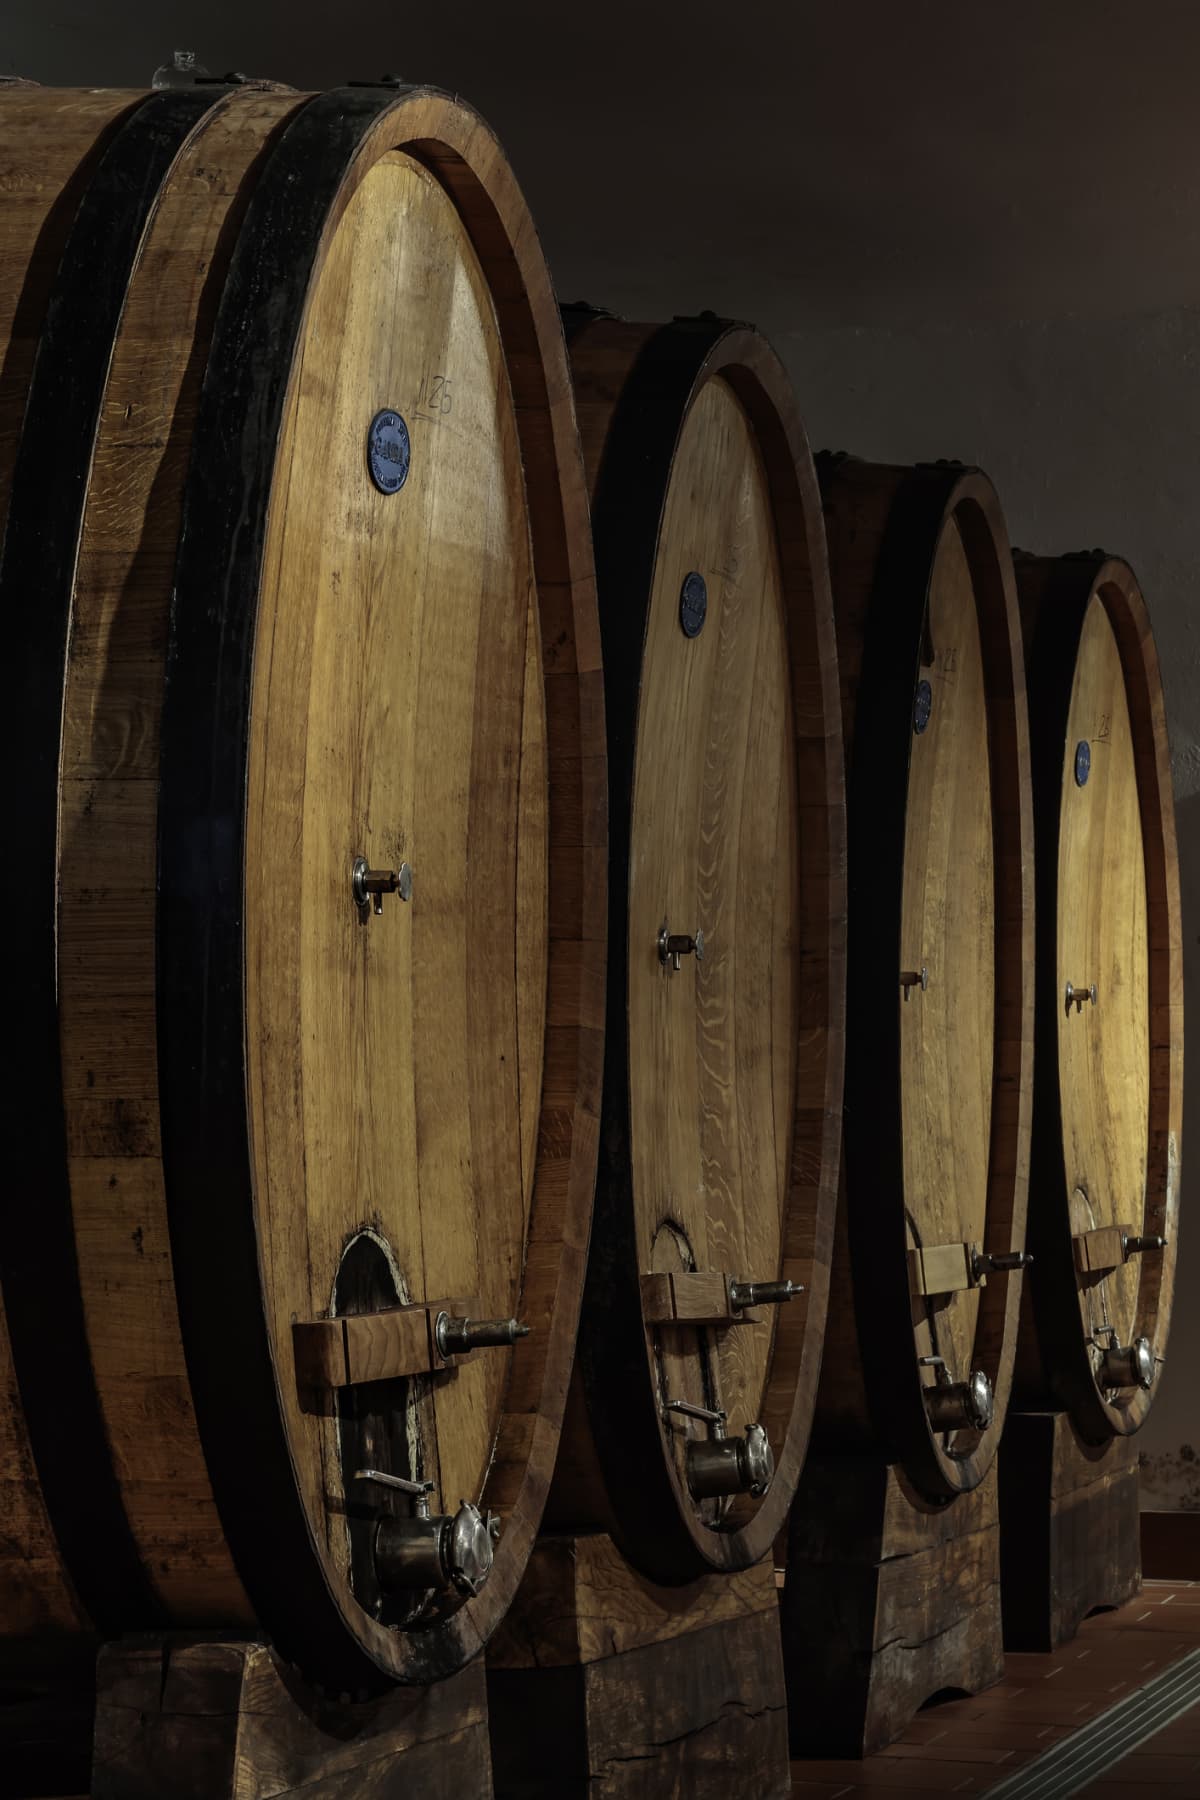 Aging barrels of bourbon